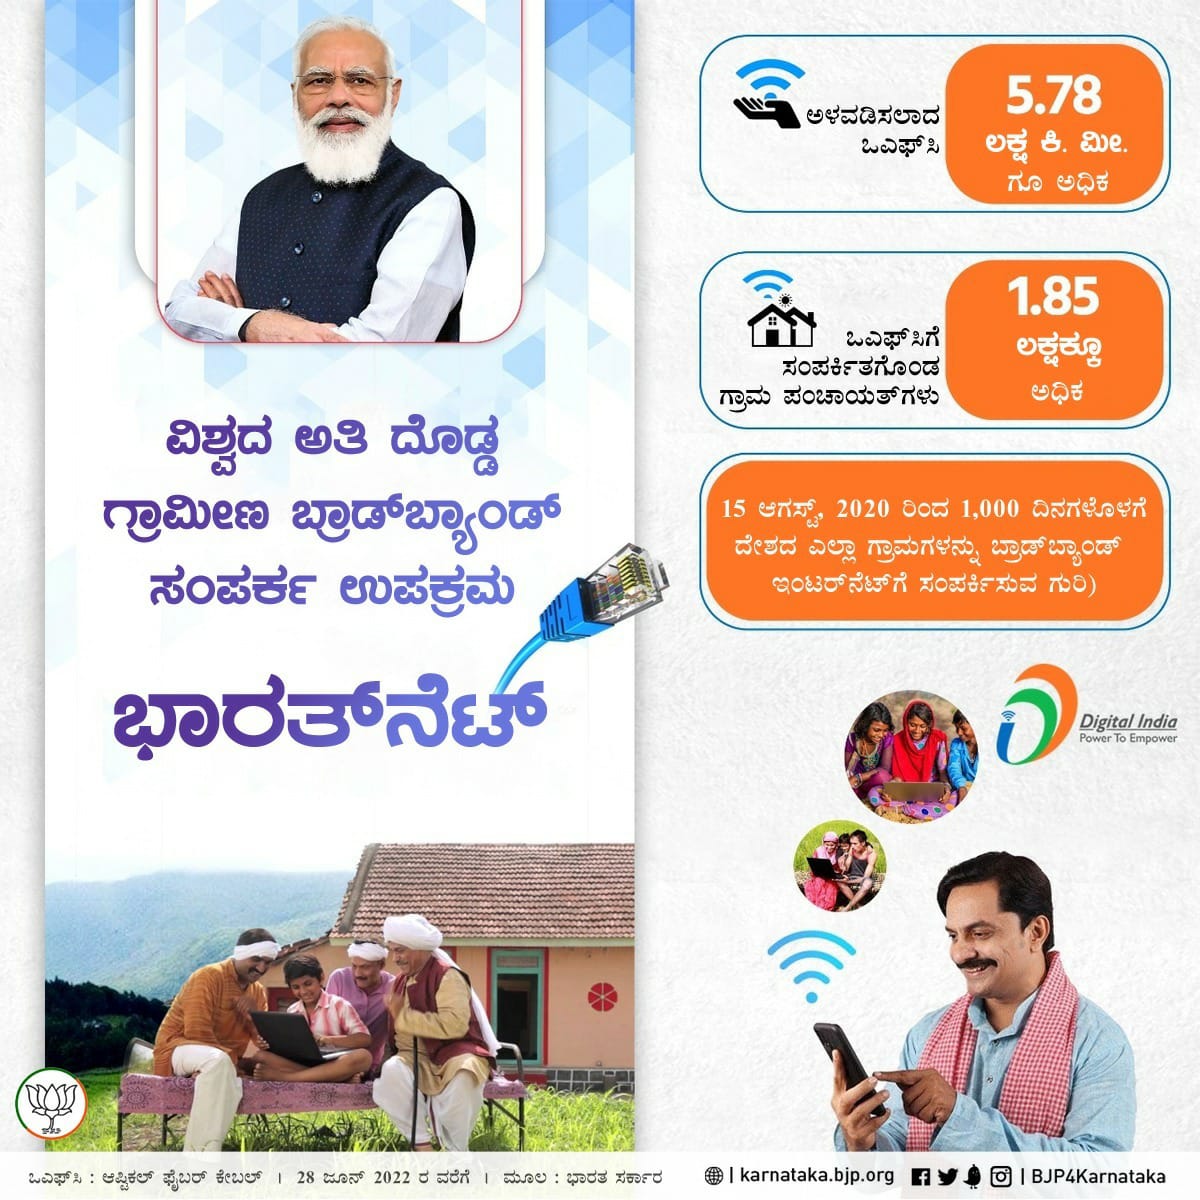 Invitation to Prime Minister Shri Narendra Modi in Mangalore via Yakshagana tune with the aid of using Yakshadhruva Patla Satish Shetty.”
#KarnatakaWelcomesModi